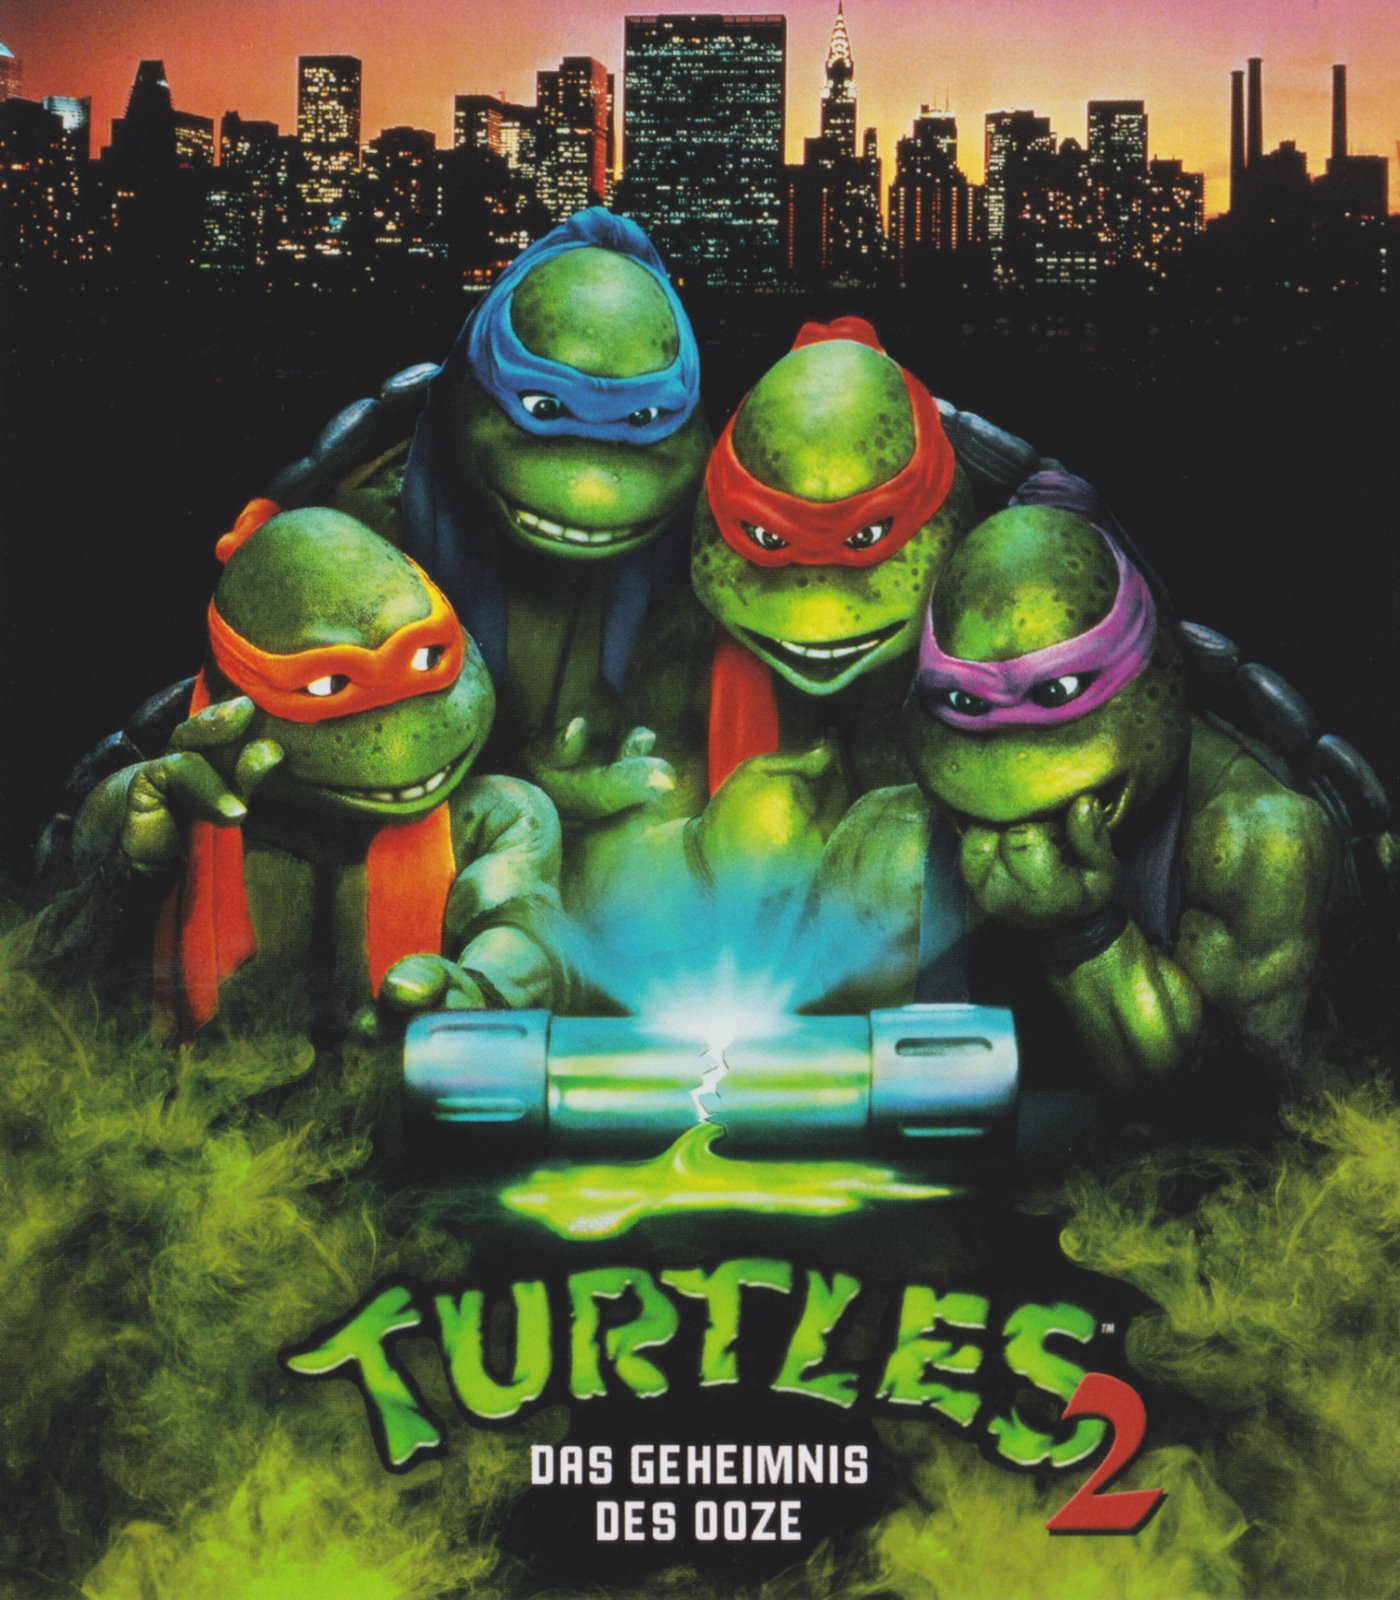 Cover - Turtles II - Das Geheimnis des Ooze.jpg